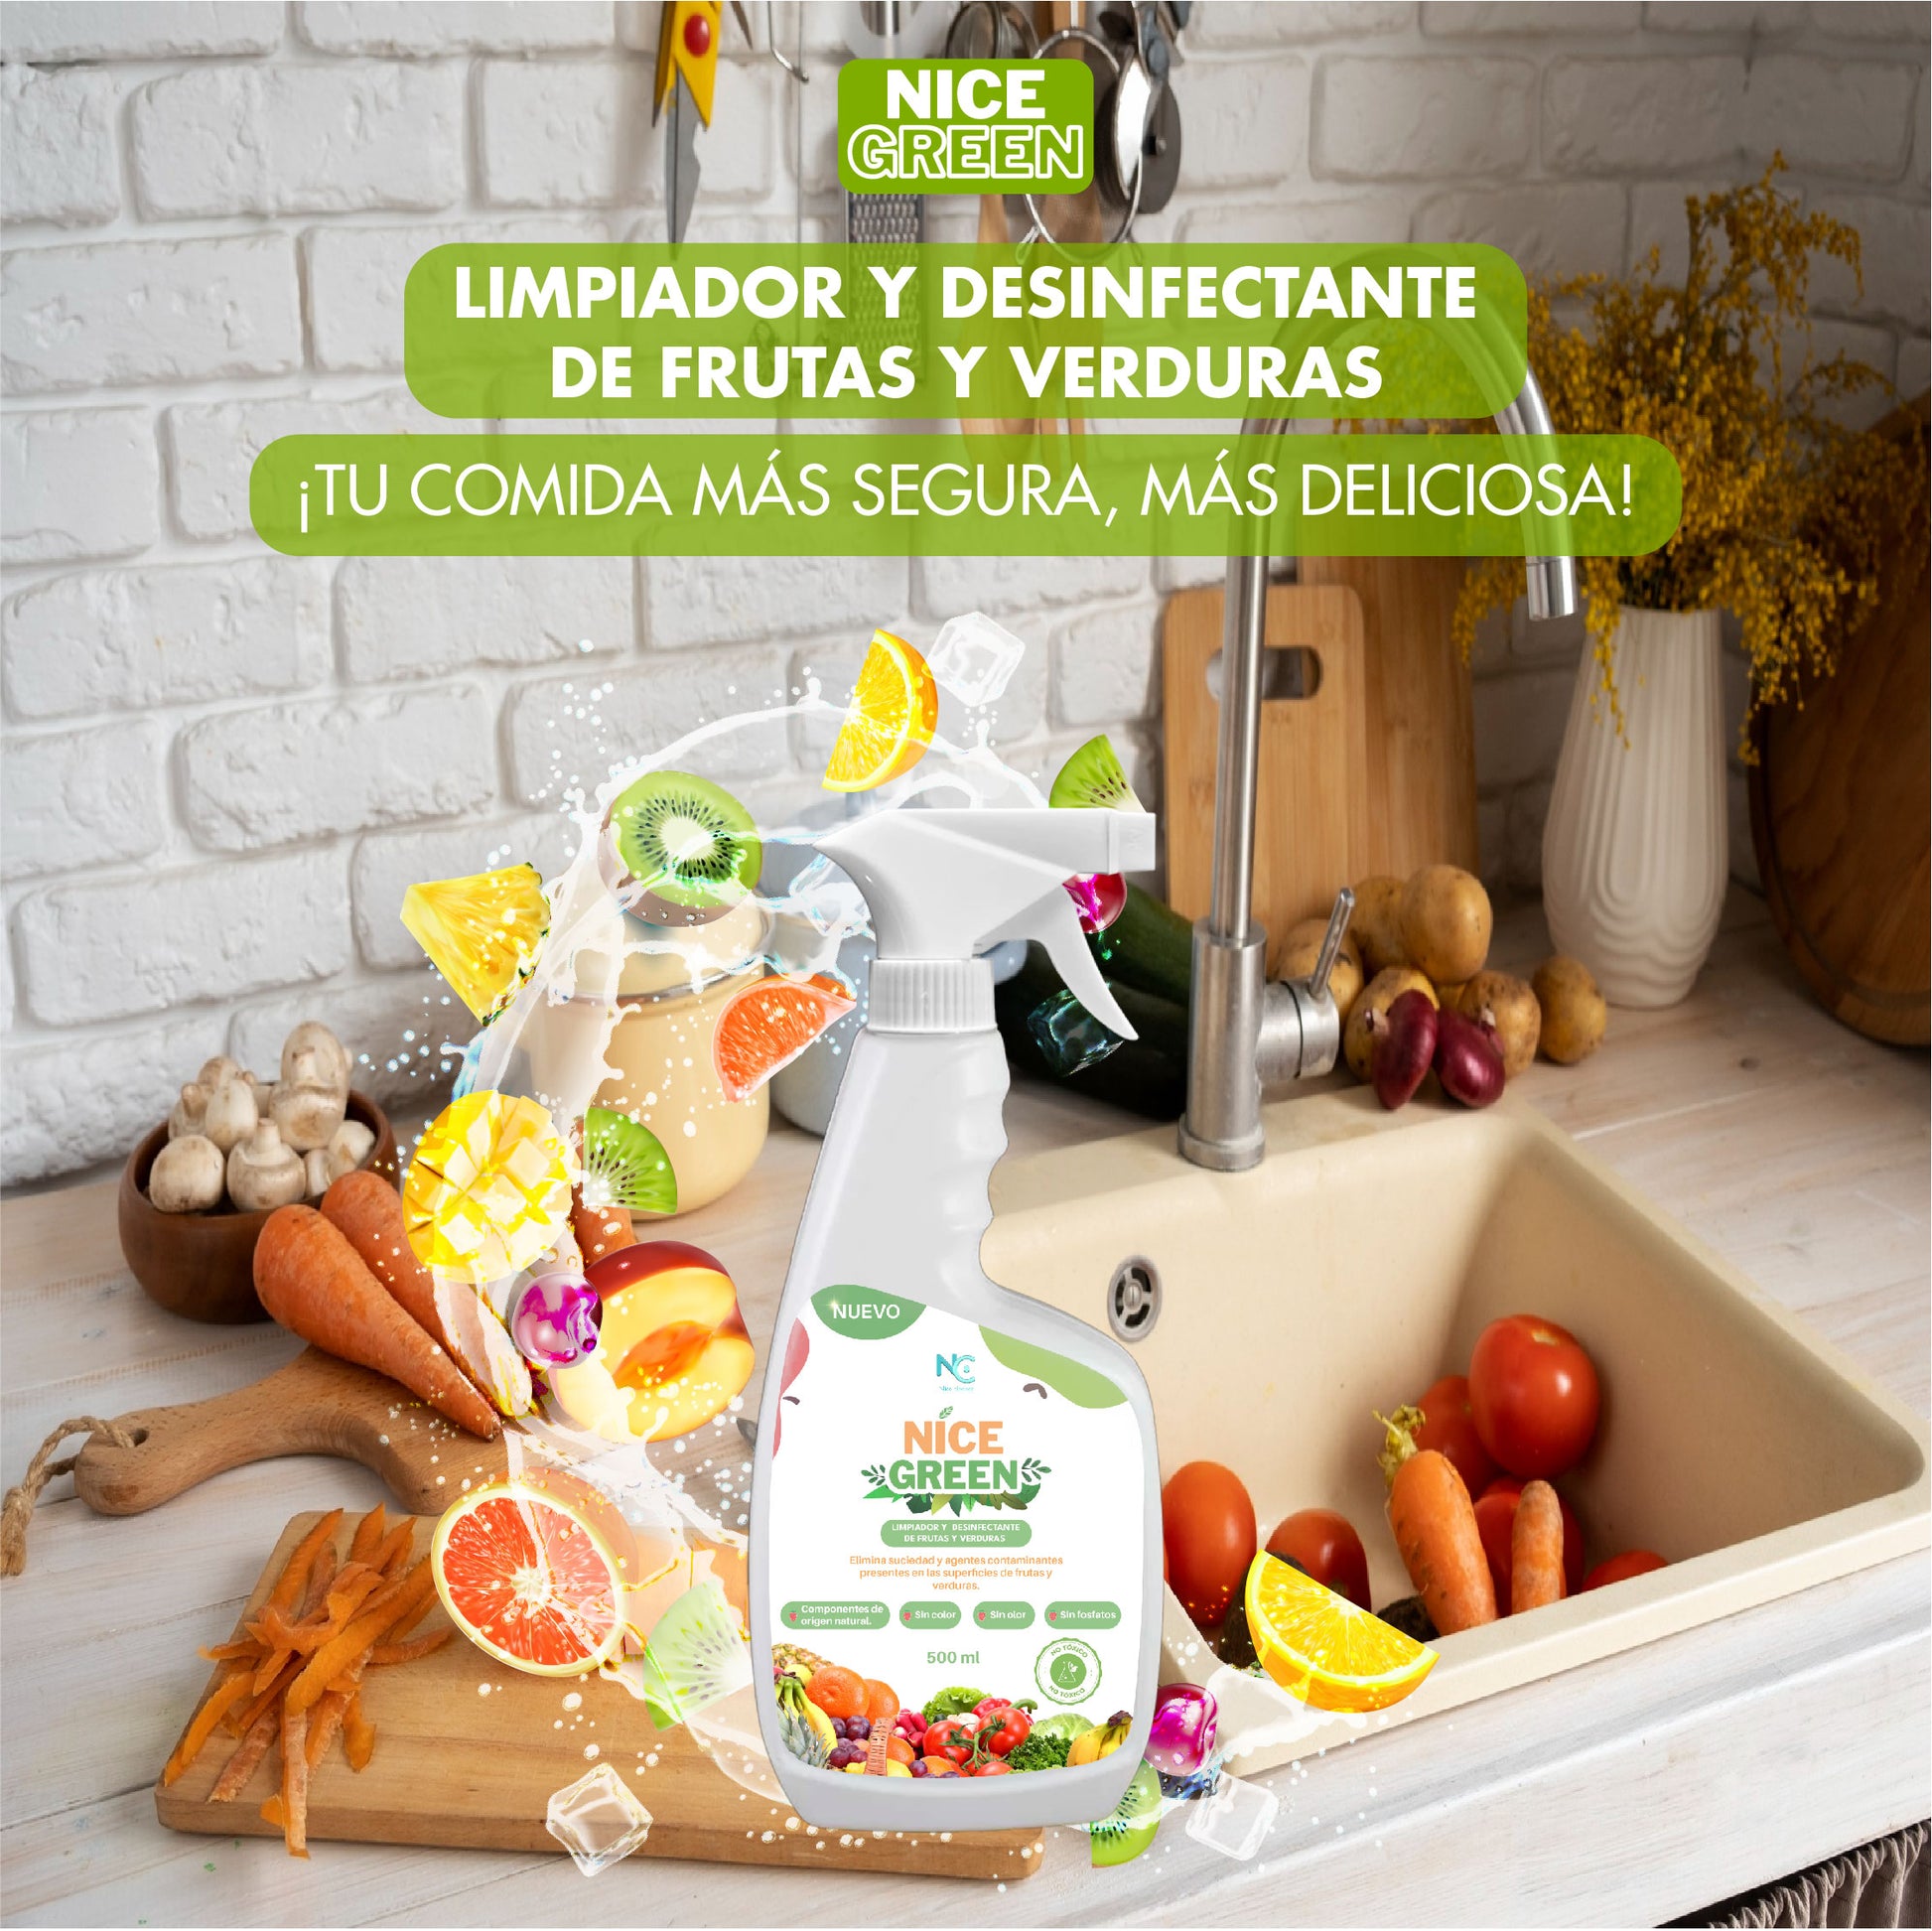 NICE GREEN, Limpiador y desinfectante de frutas y verduras – Nice